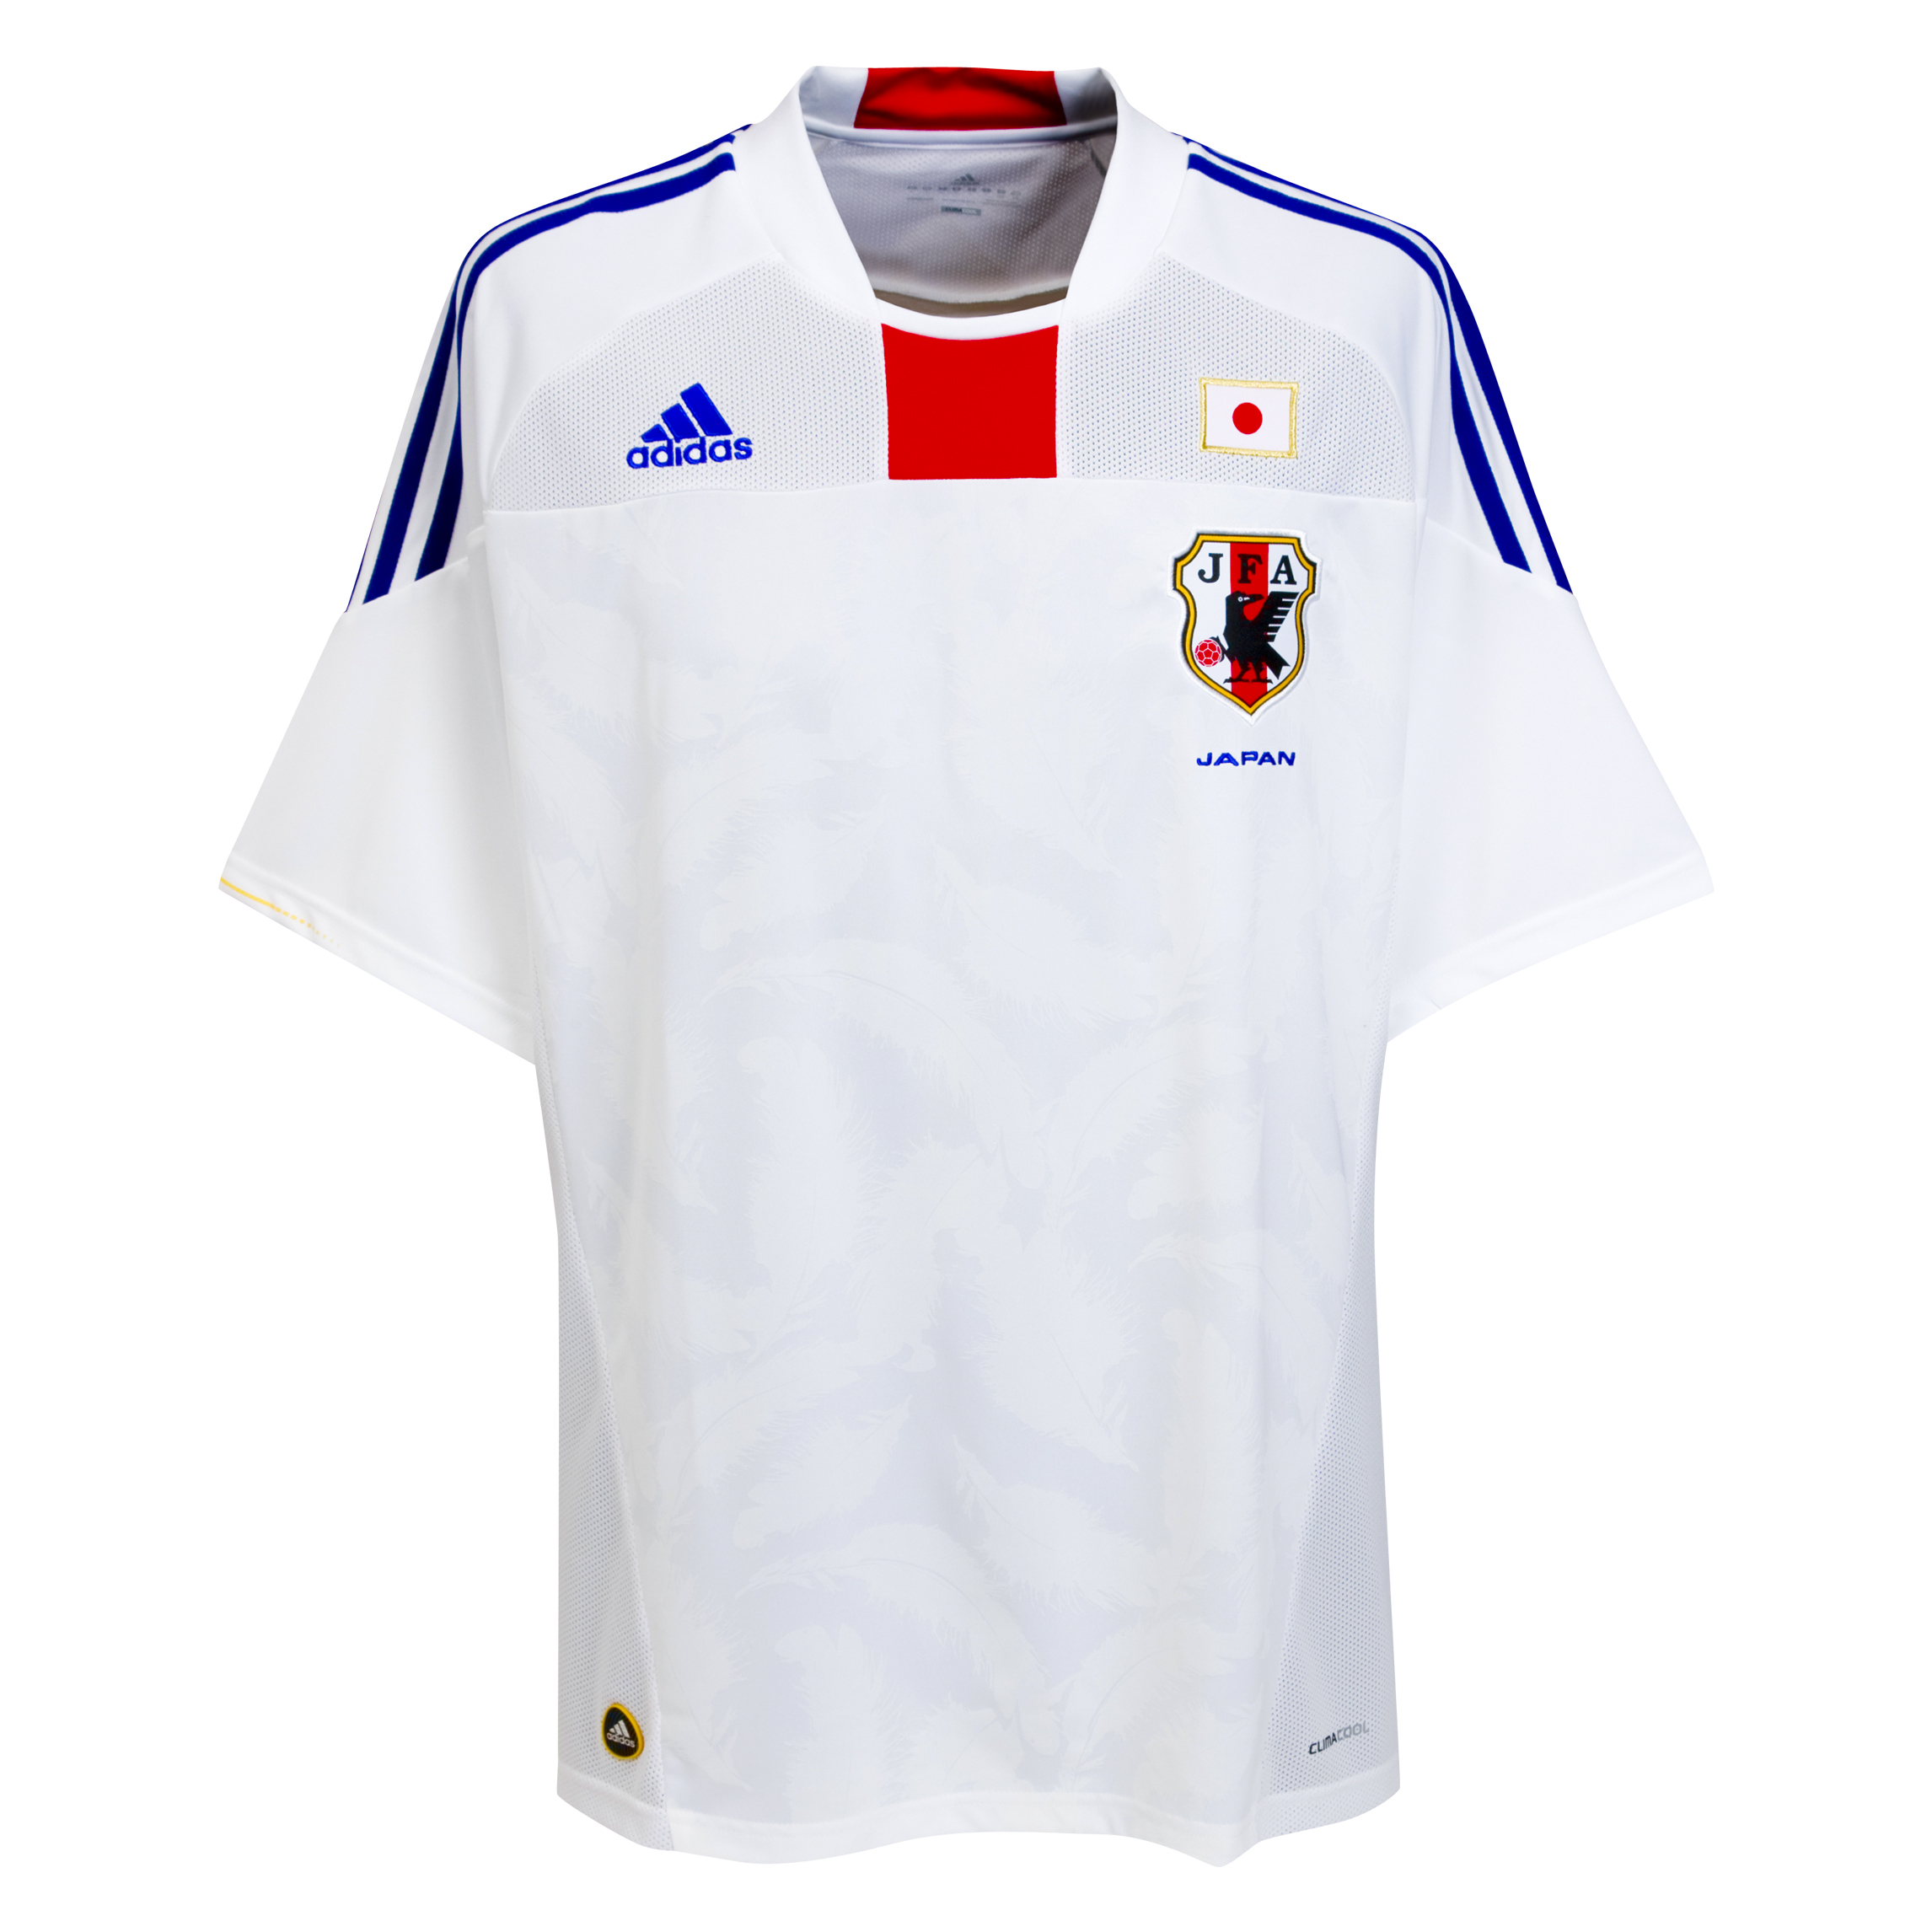 ملابس المنتخبات لكأس العالم ‎(2010)‎ Kb-66941